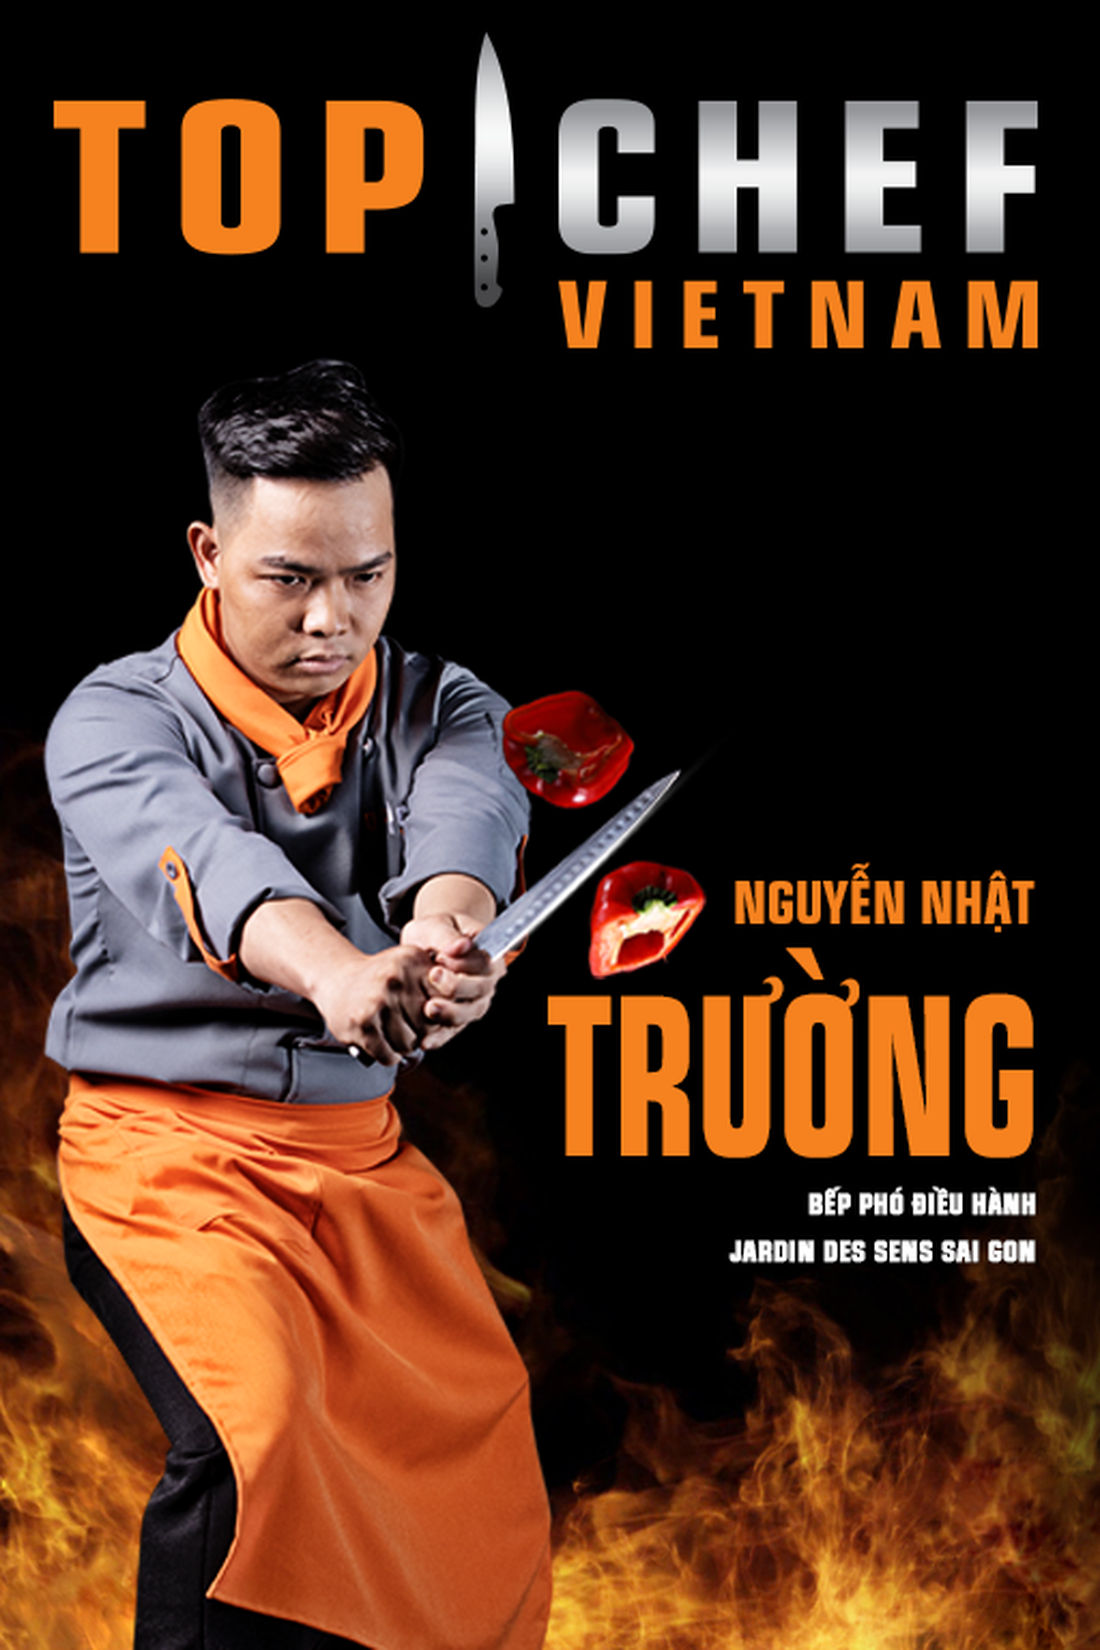 Lộ diện top 14 Đầu bếp thượng đỉnh - Top chef Vietnam 2019 - Ảnh 11.